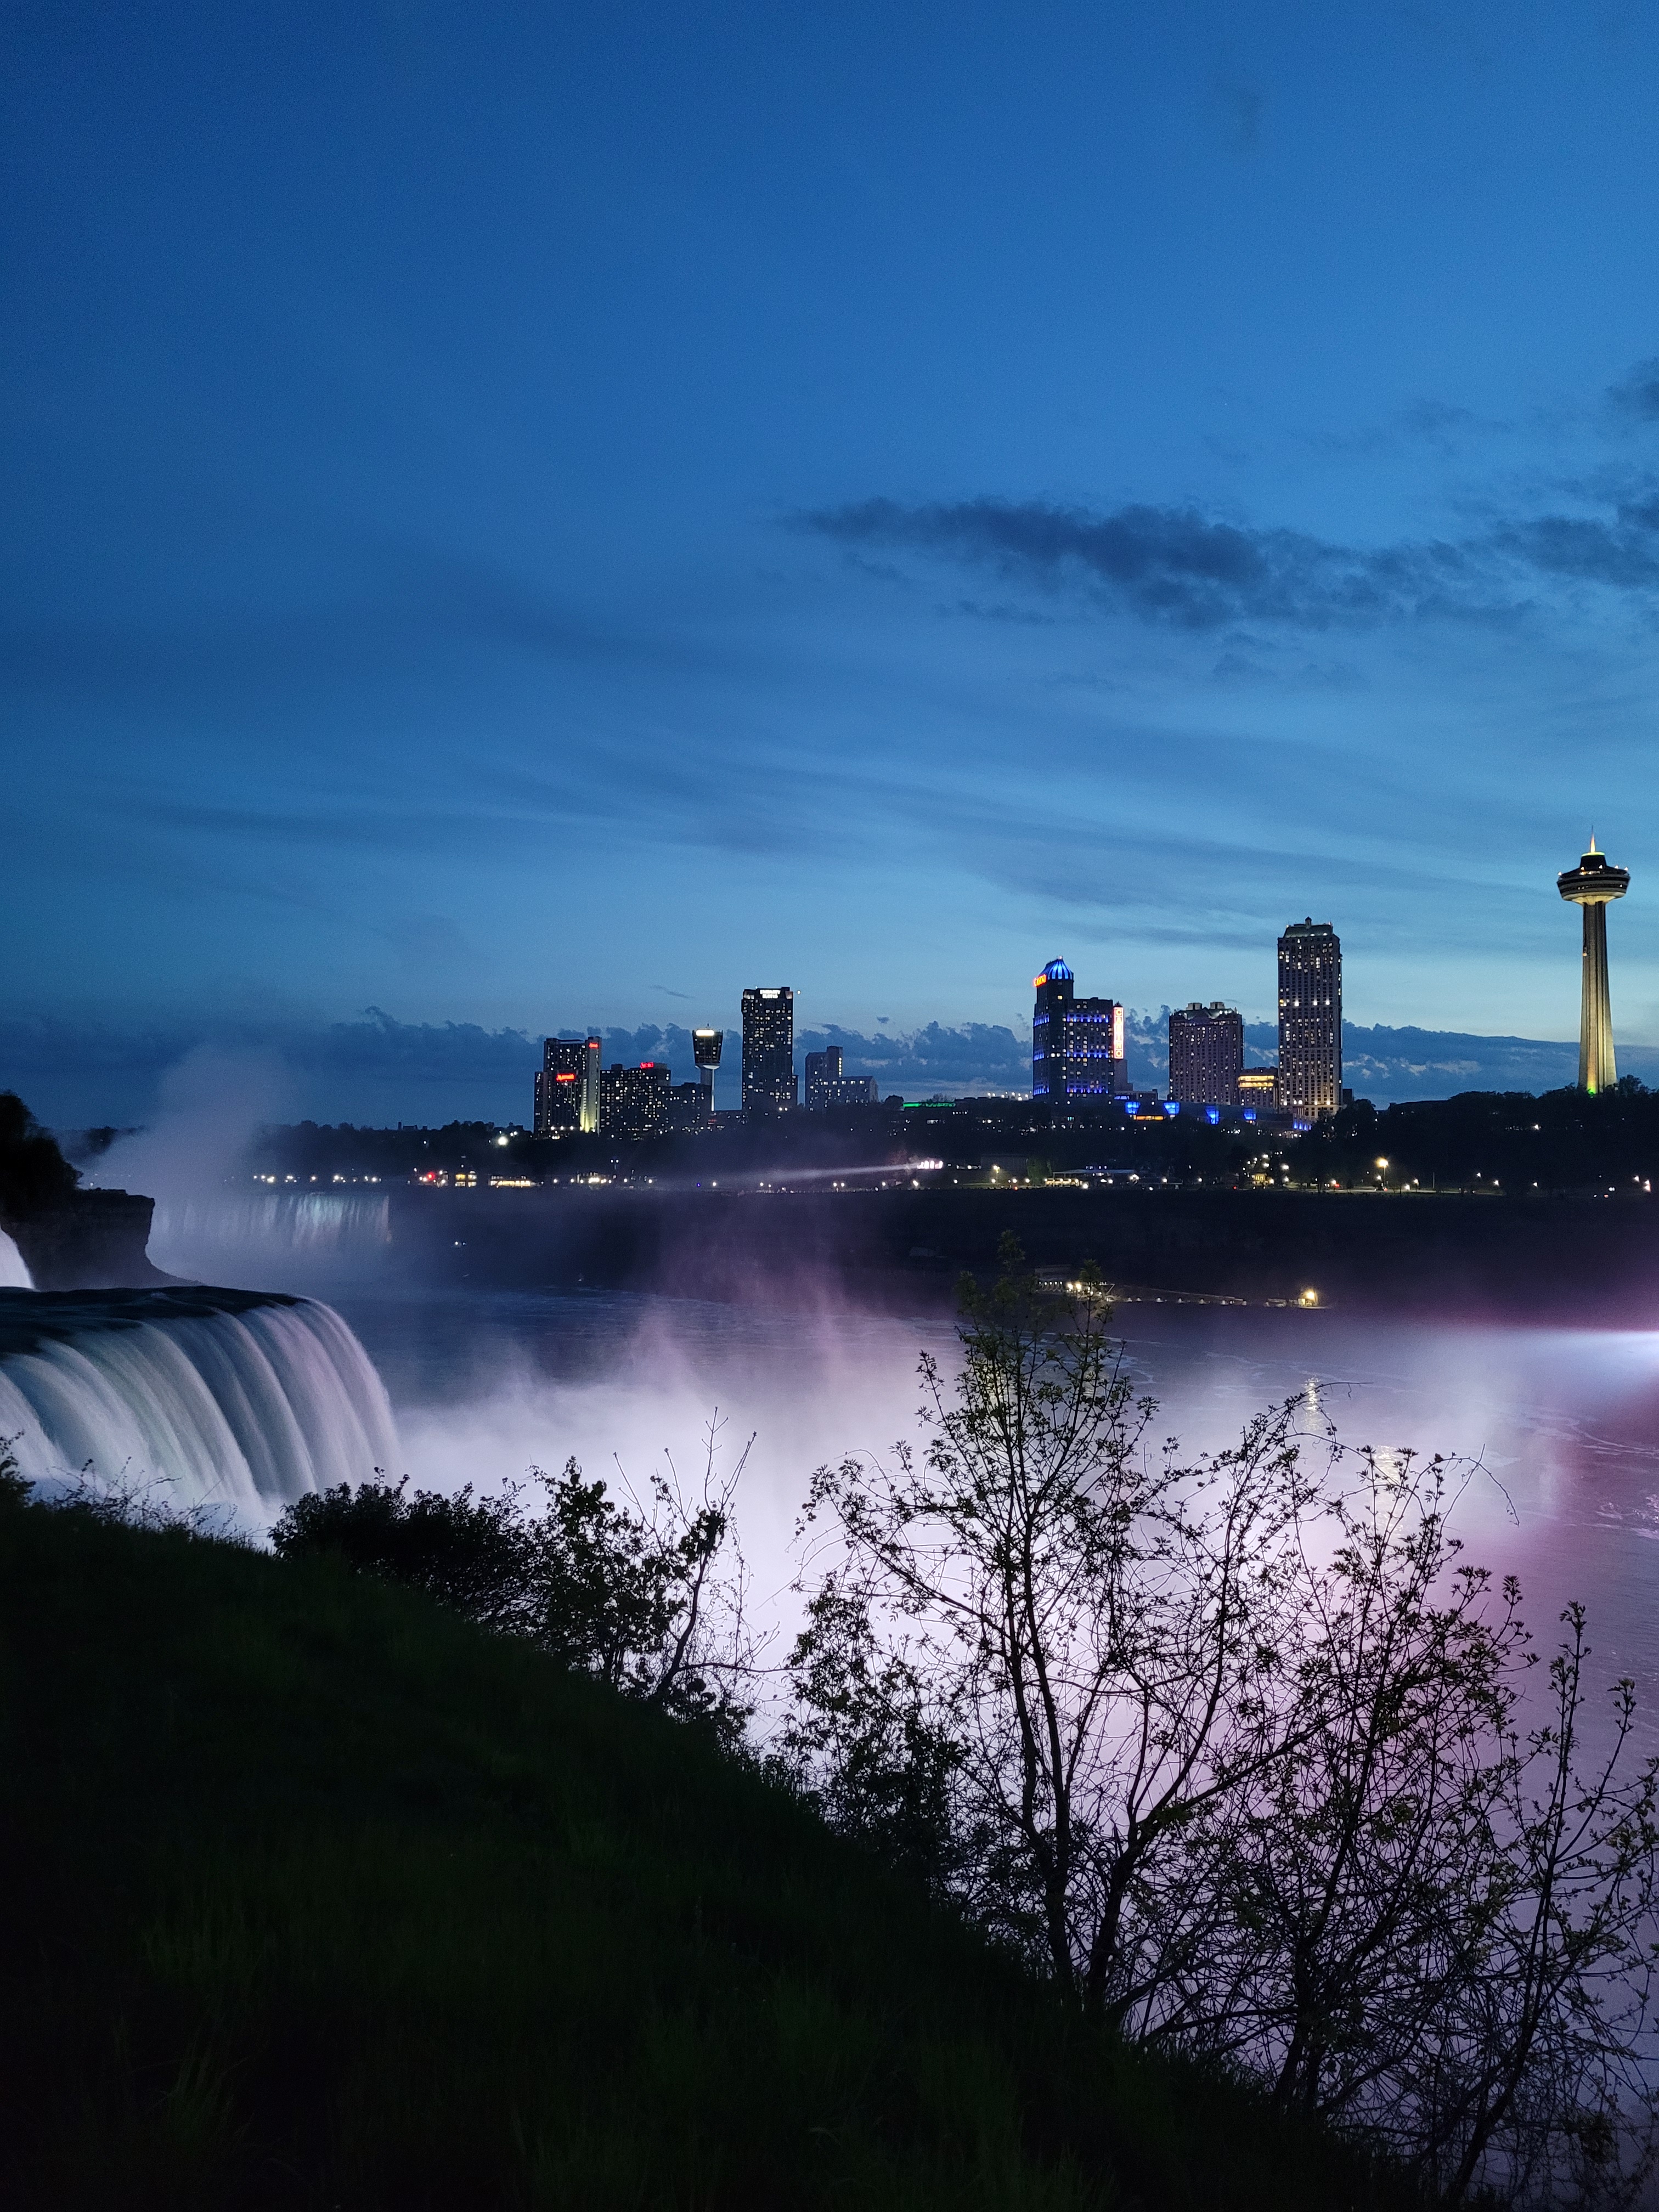 The Niagara Falls, NY 